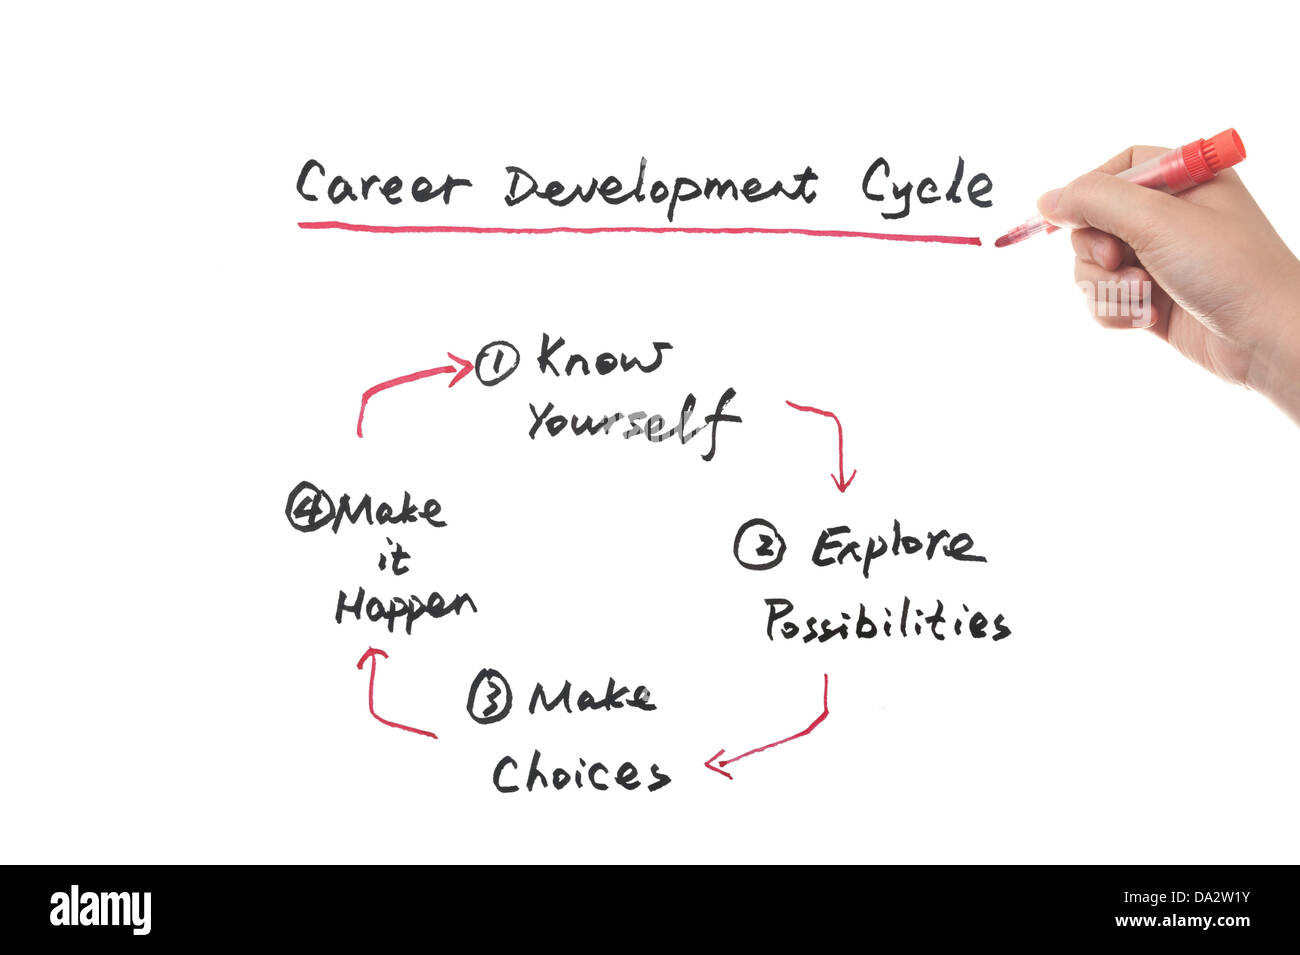 Le concept de cycle de développement de carrière schéma exécuté sur un tableau blanc Banque D'Images